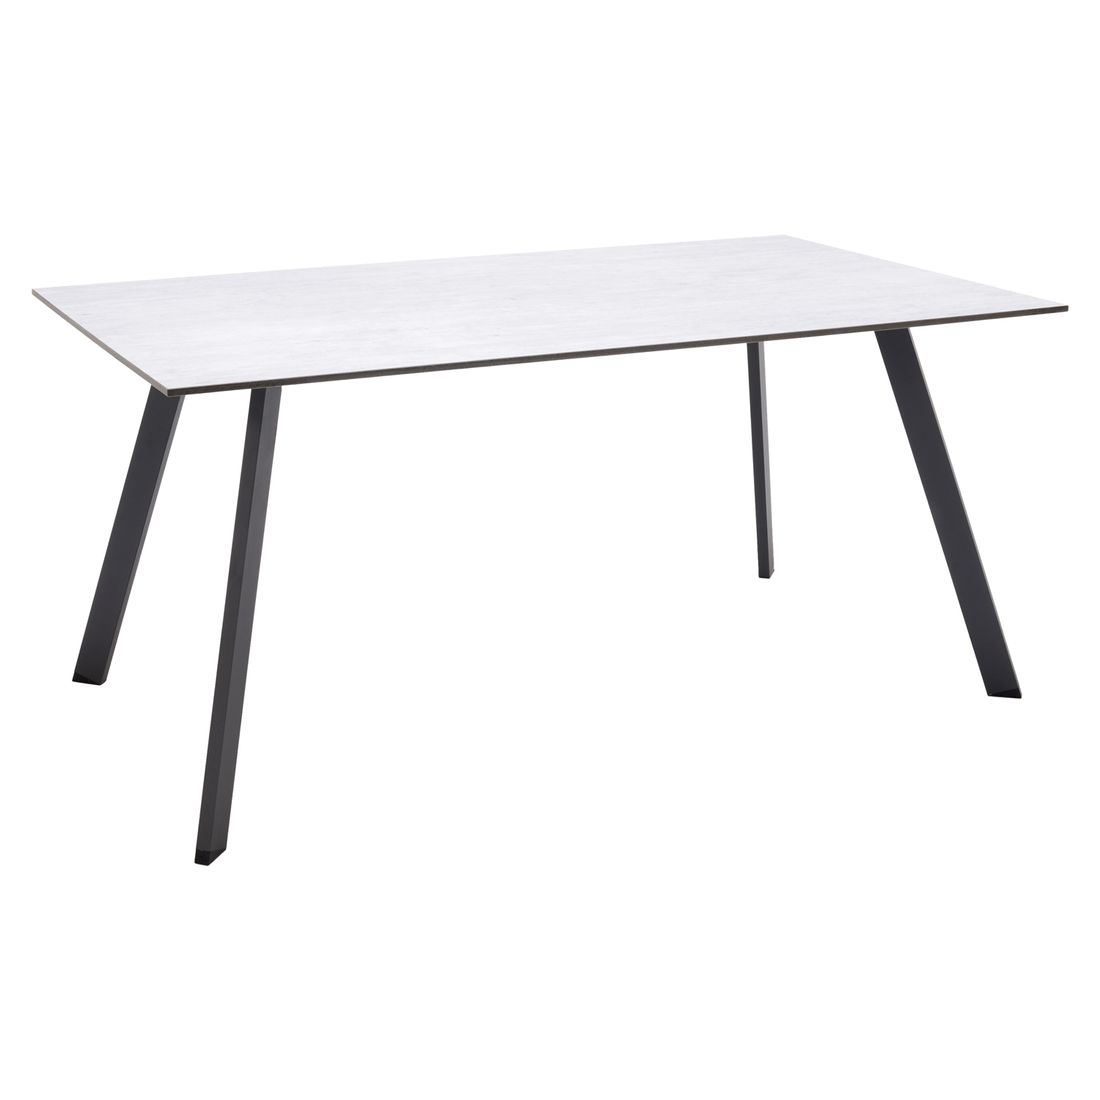 LifestyleGarden Opal Gartenmöbel-Set 5-tlg. Tisch 160x90cm